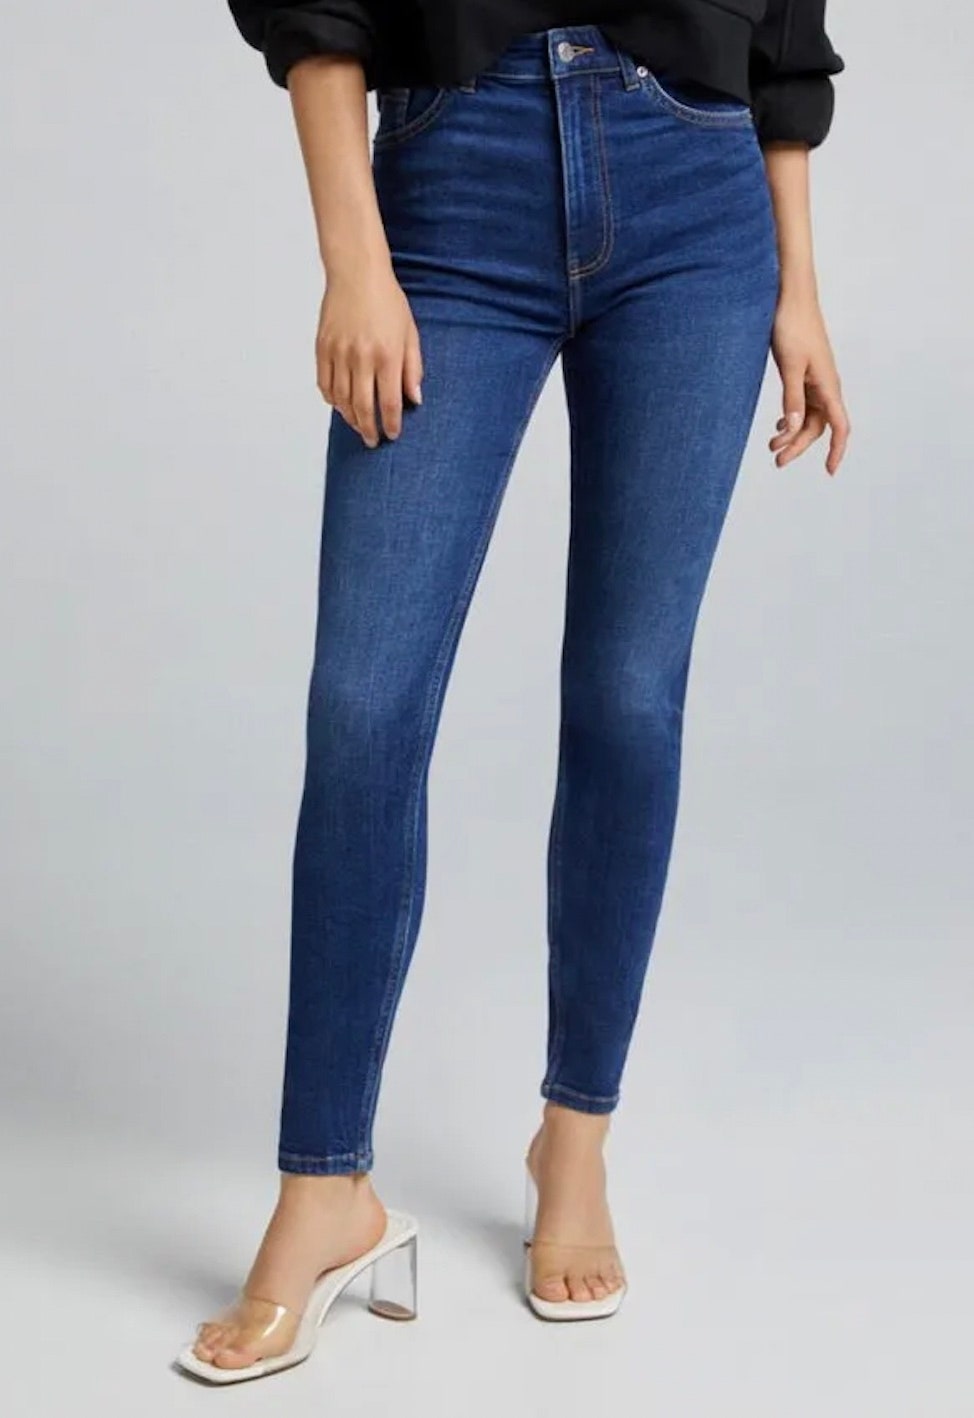 Звездный обзор джинсы скинни как у Дженнифер Лопес. Где купить | Фото